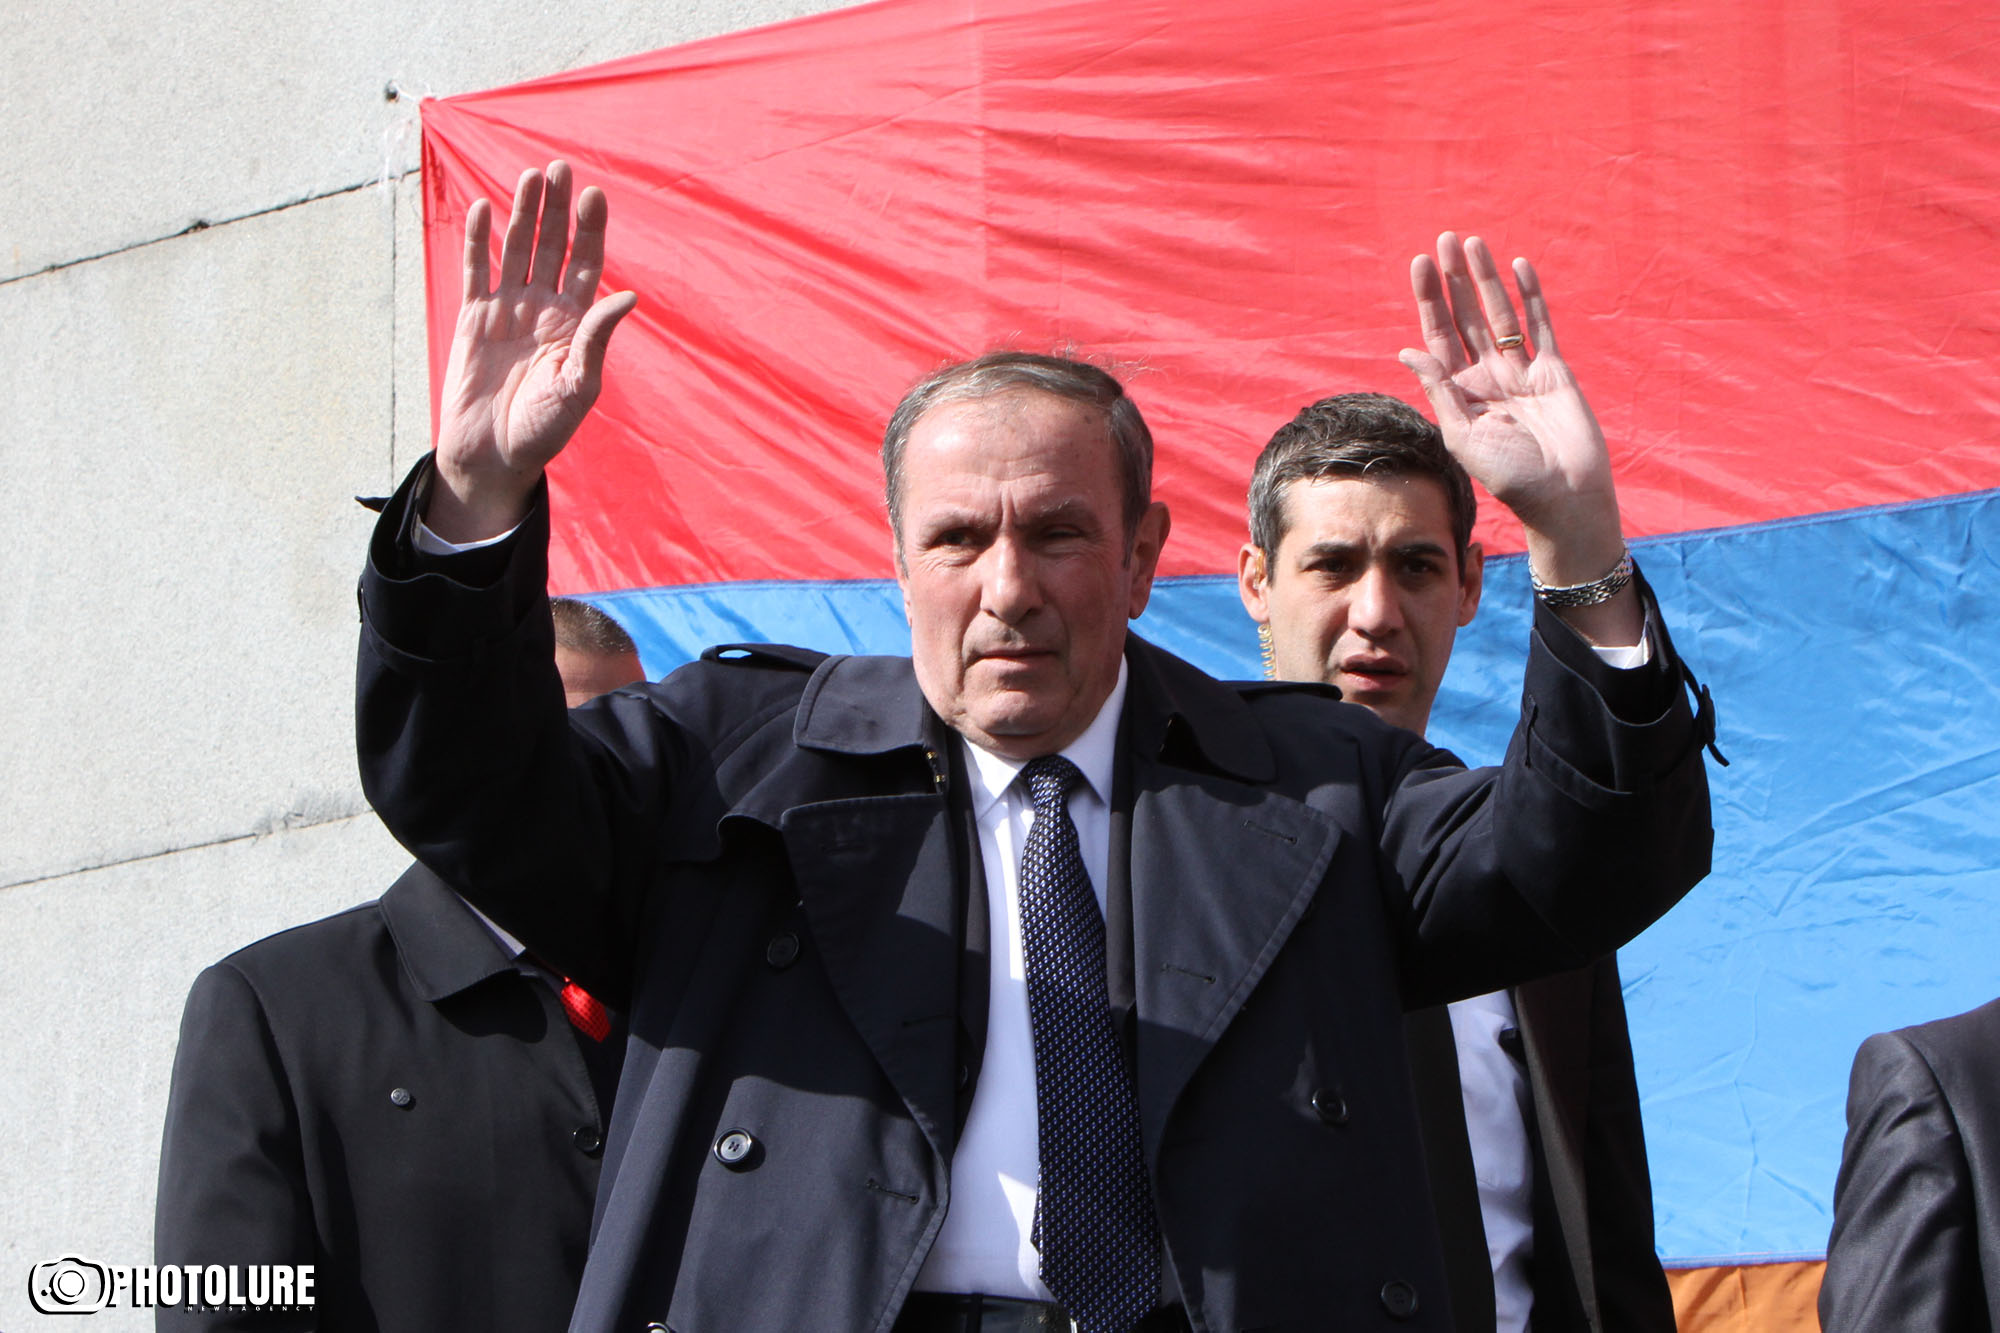 Ermenistan'ın ilk Cumhurbaşkanı Levon Ter-Petrosyan, 1 Mart olaylarına ilişkin tanıklık yapmaya hazır